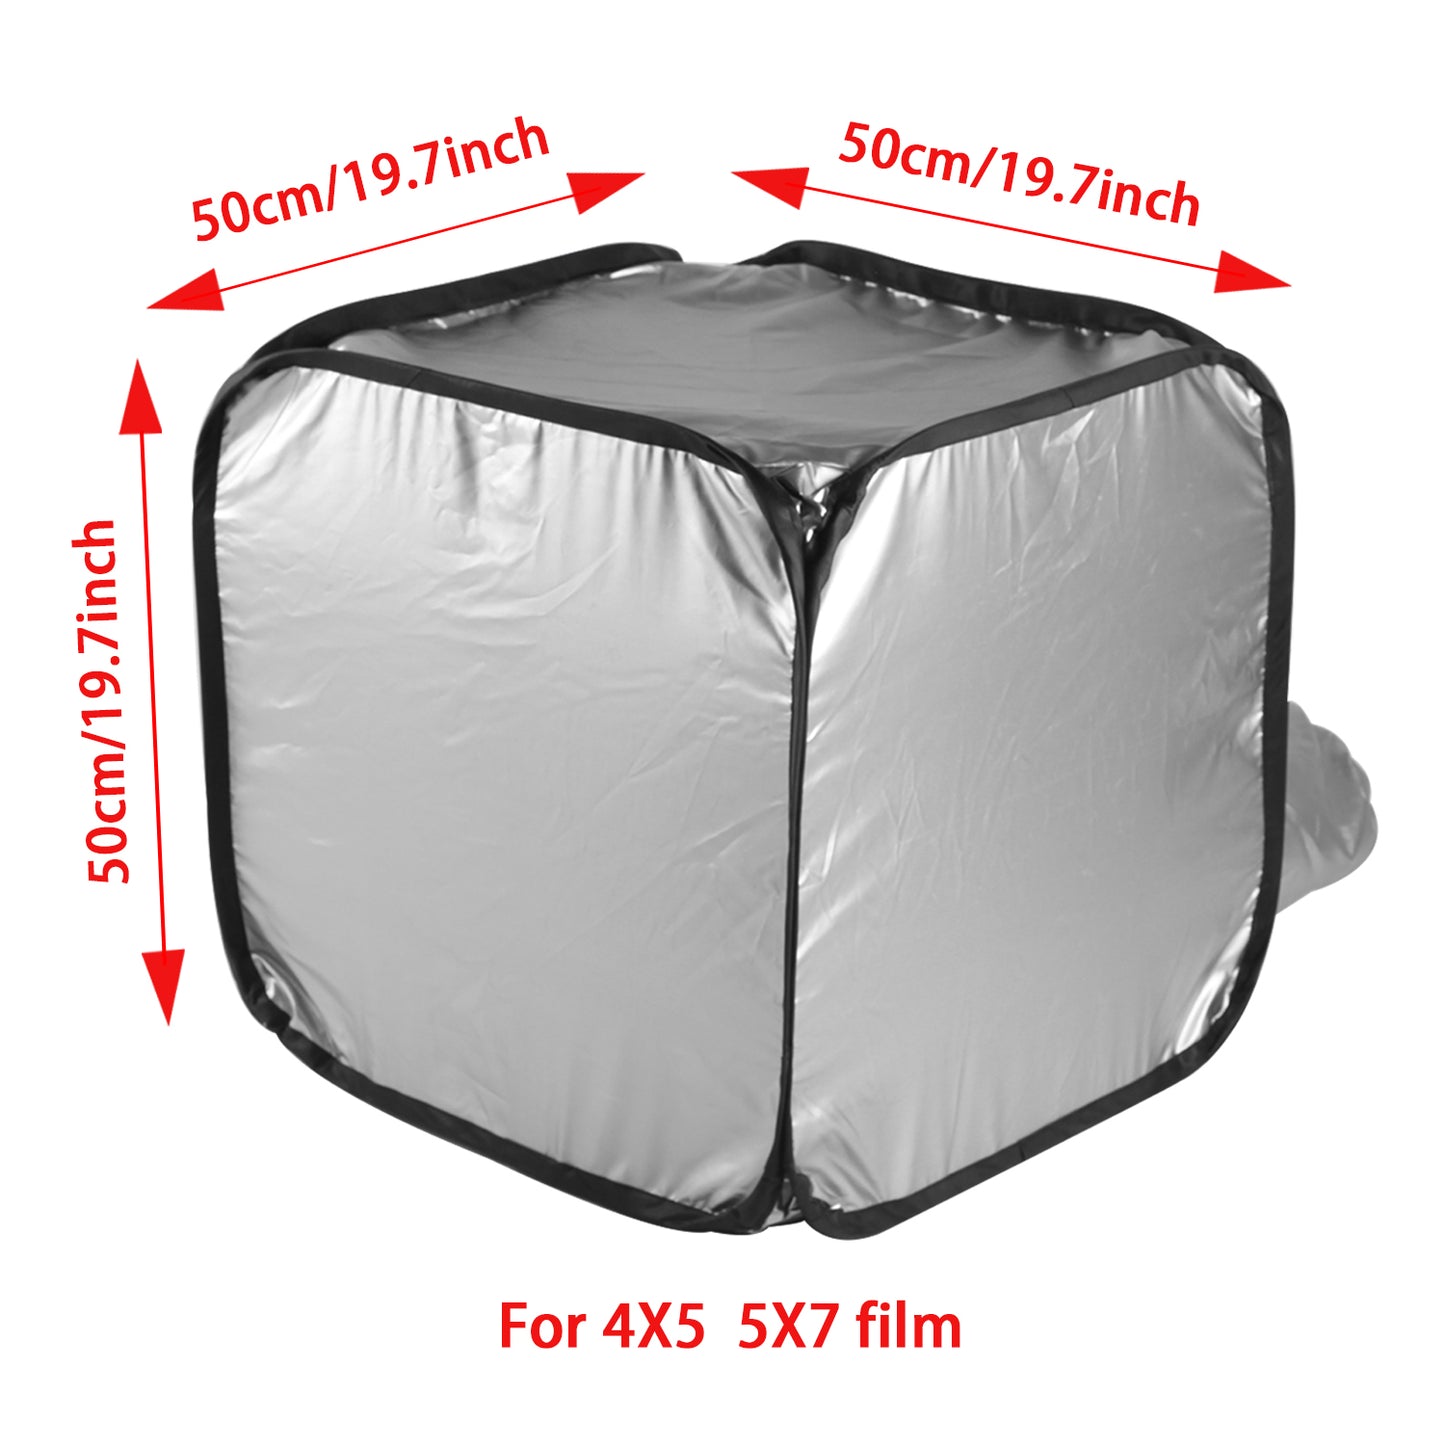 Borsa per tenda per caricamento pellicola per cambio pellicola per camera oscura di grande formato per lo sviluppo negativo della fotocamera 4x5 5x7